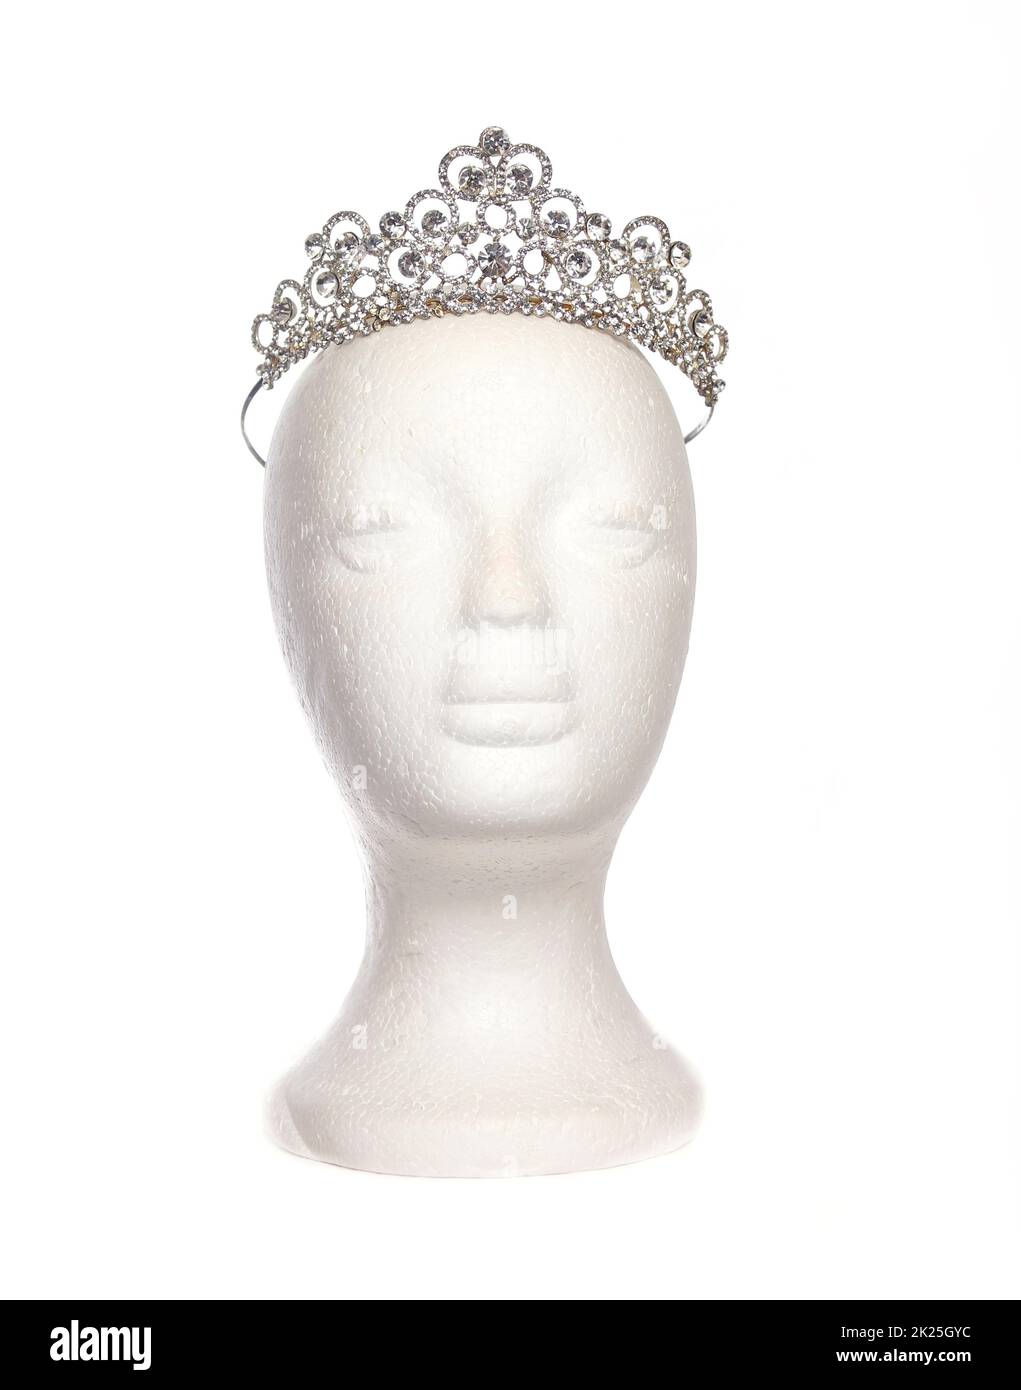 Jeweled Tiara sur la tête de mannequin isolé sur blanc Banque D'Images